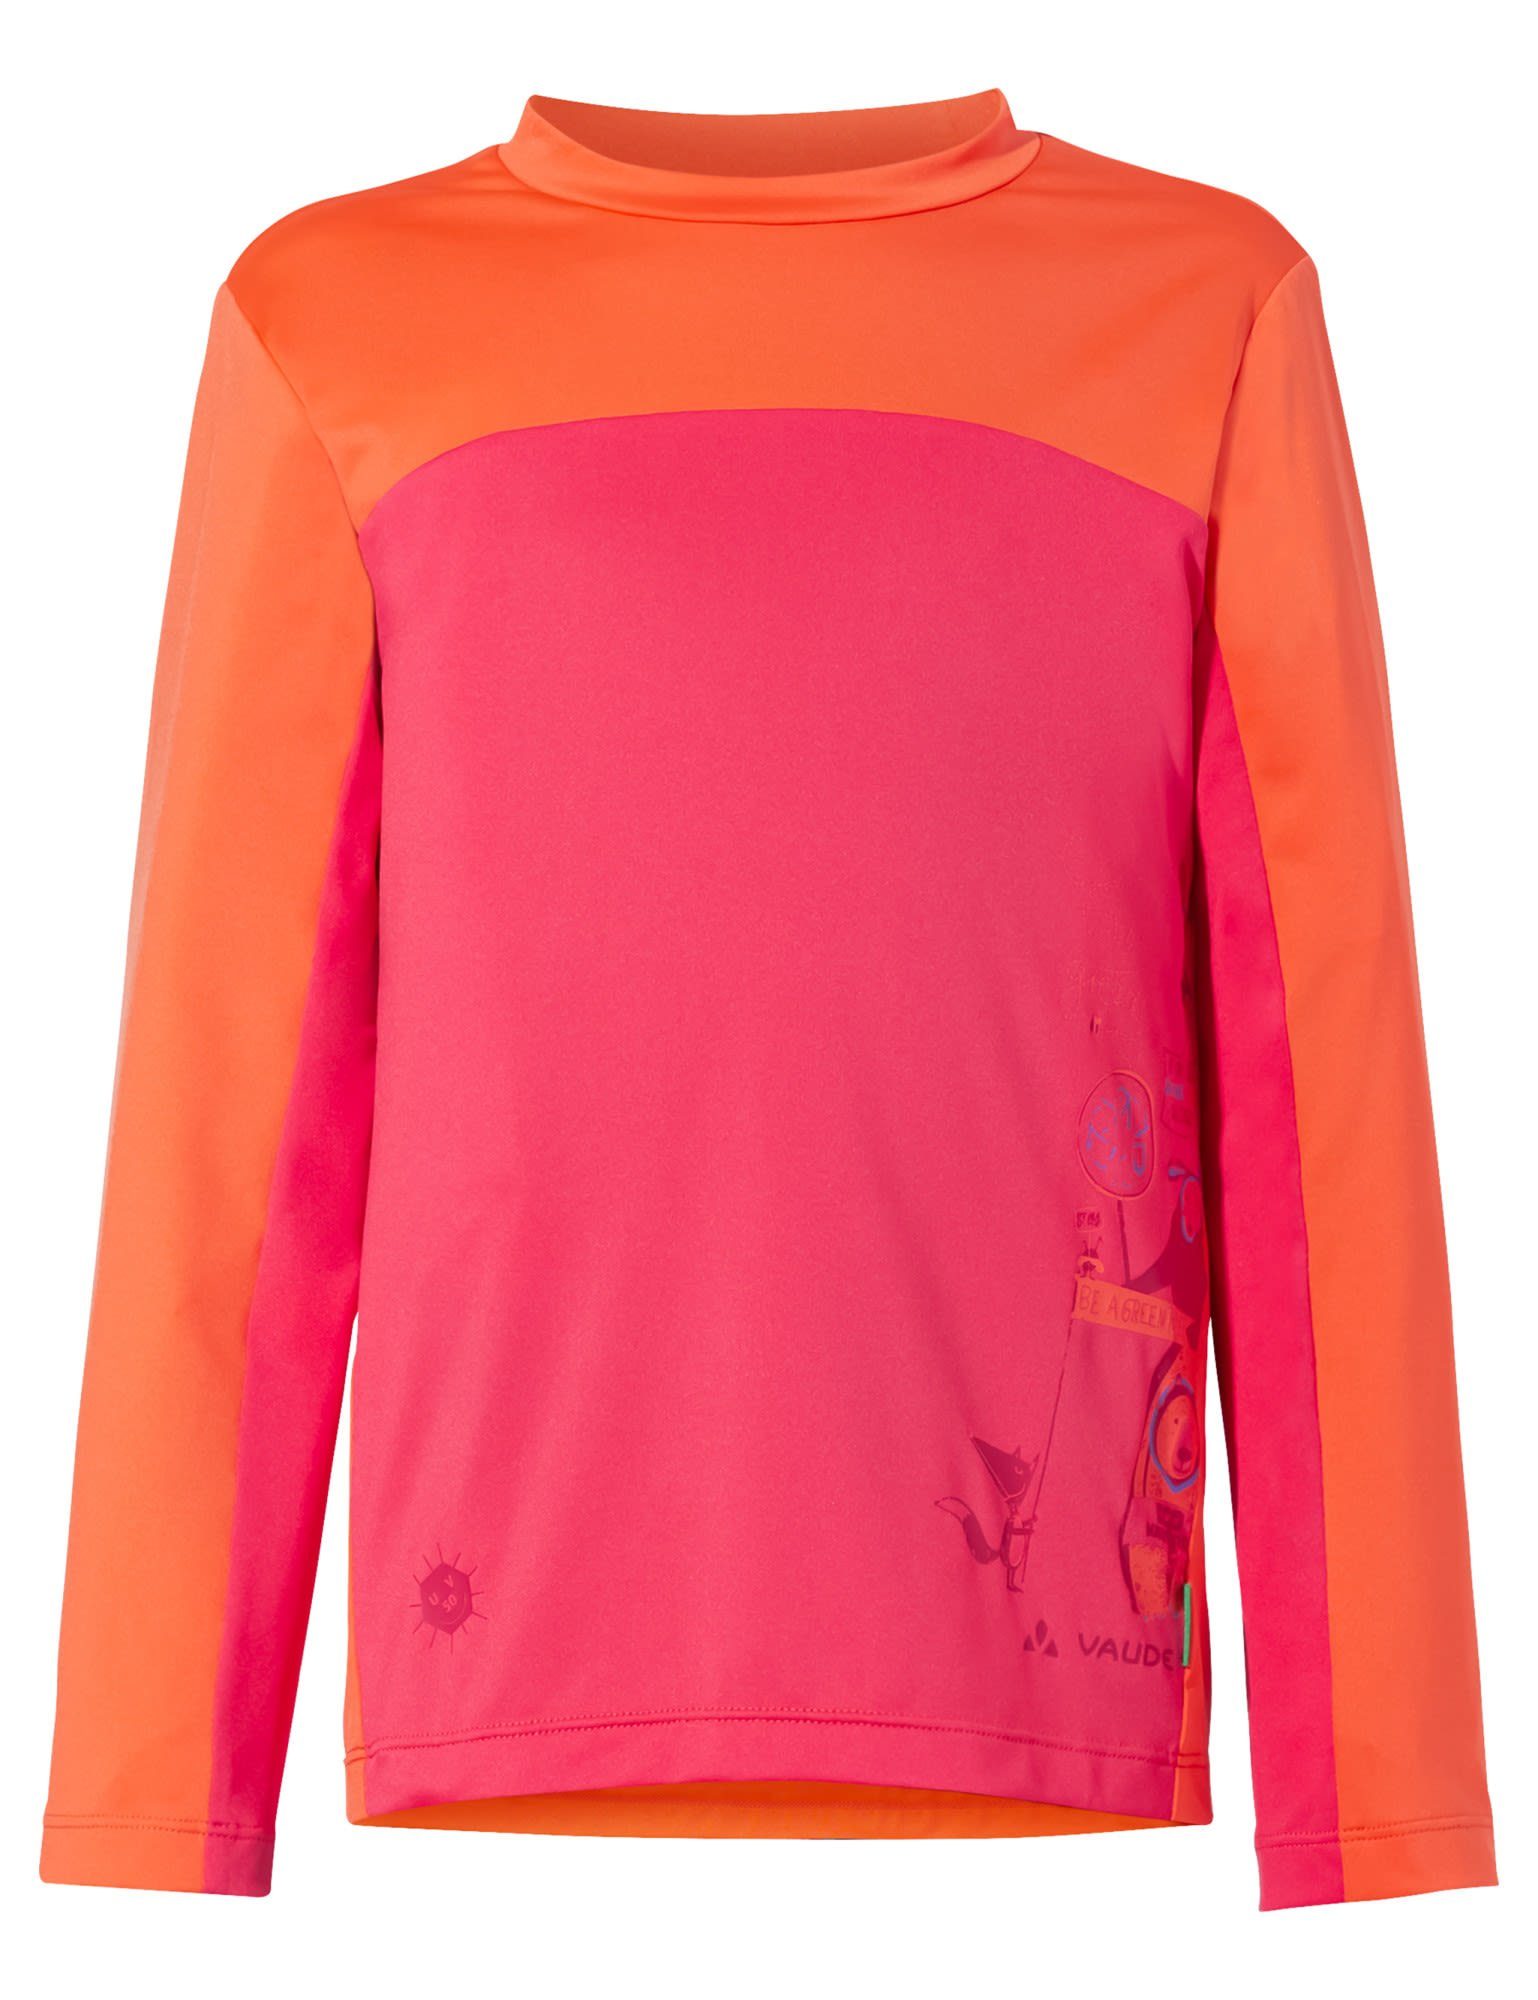 VAUDE Langarmshirt Vaude Kids Solaro Long-sleeve T-shirt Ii Kinder Bright Pink - Orange